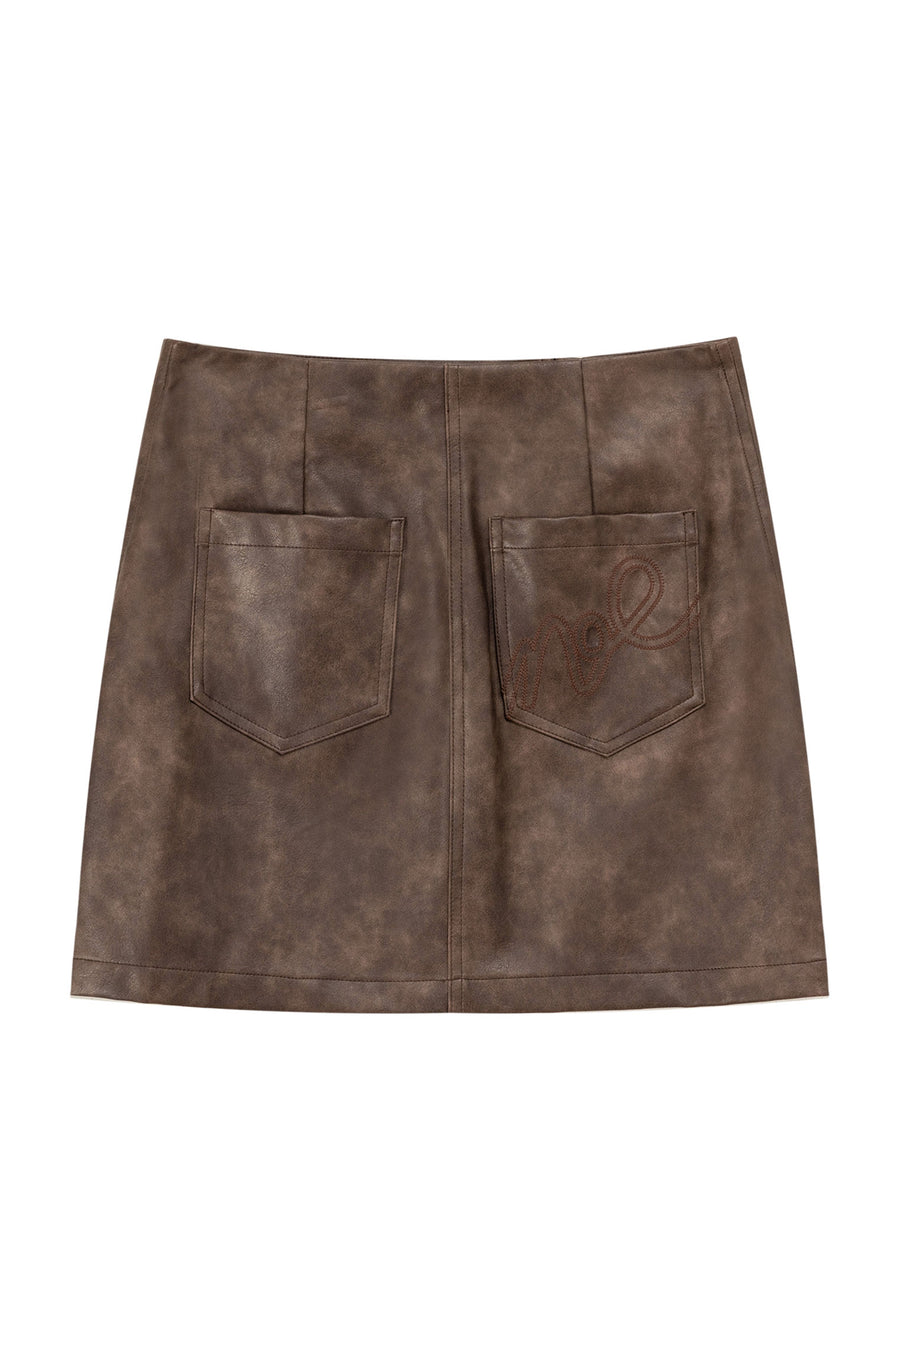 CHUU Zipper Leather Skirt